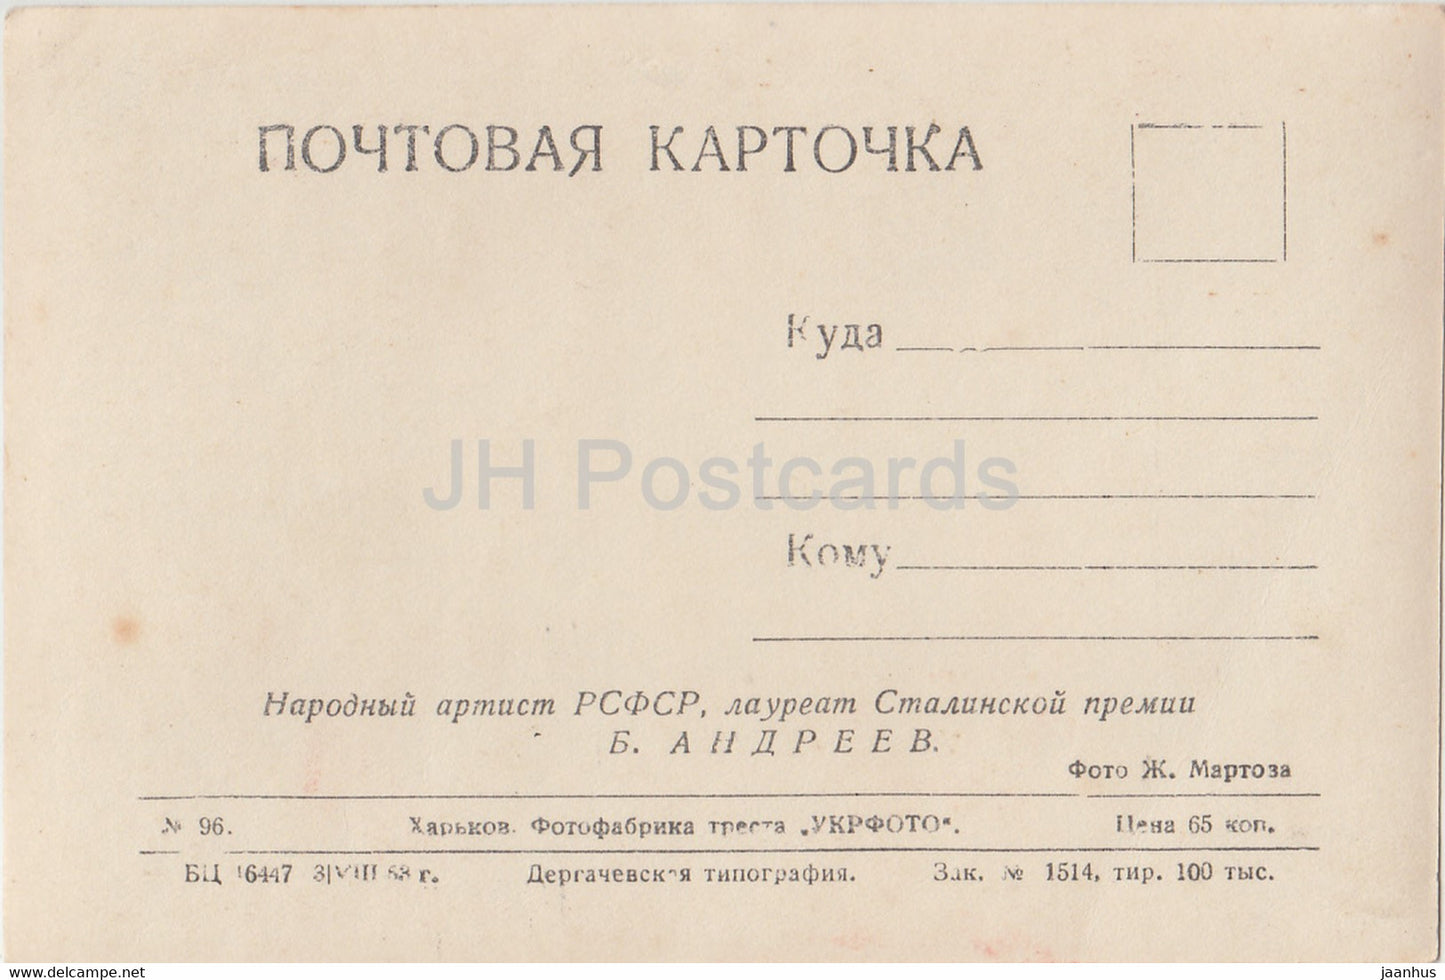 Sowjetischer Schauspieler Boris Andreyev - Film - Film - 1953 - alte Postkarte - Russland UdSSR - unbenutzt